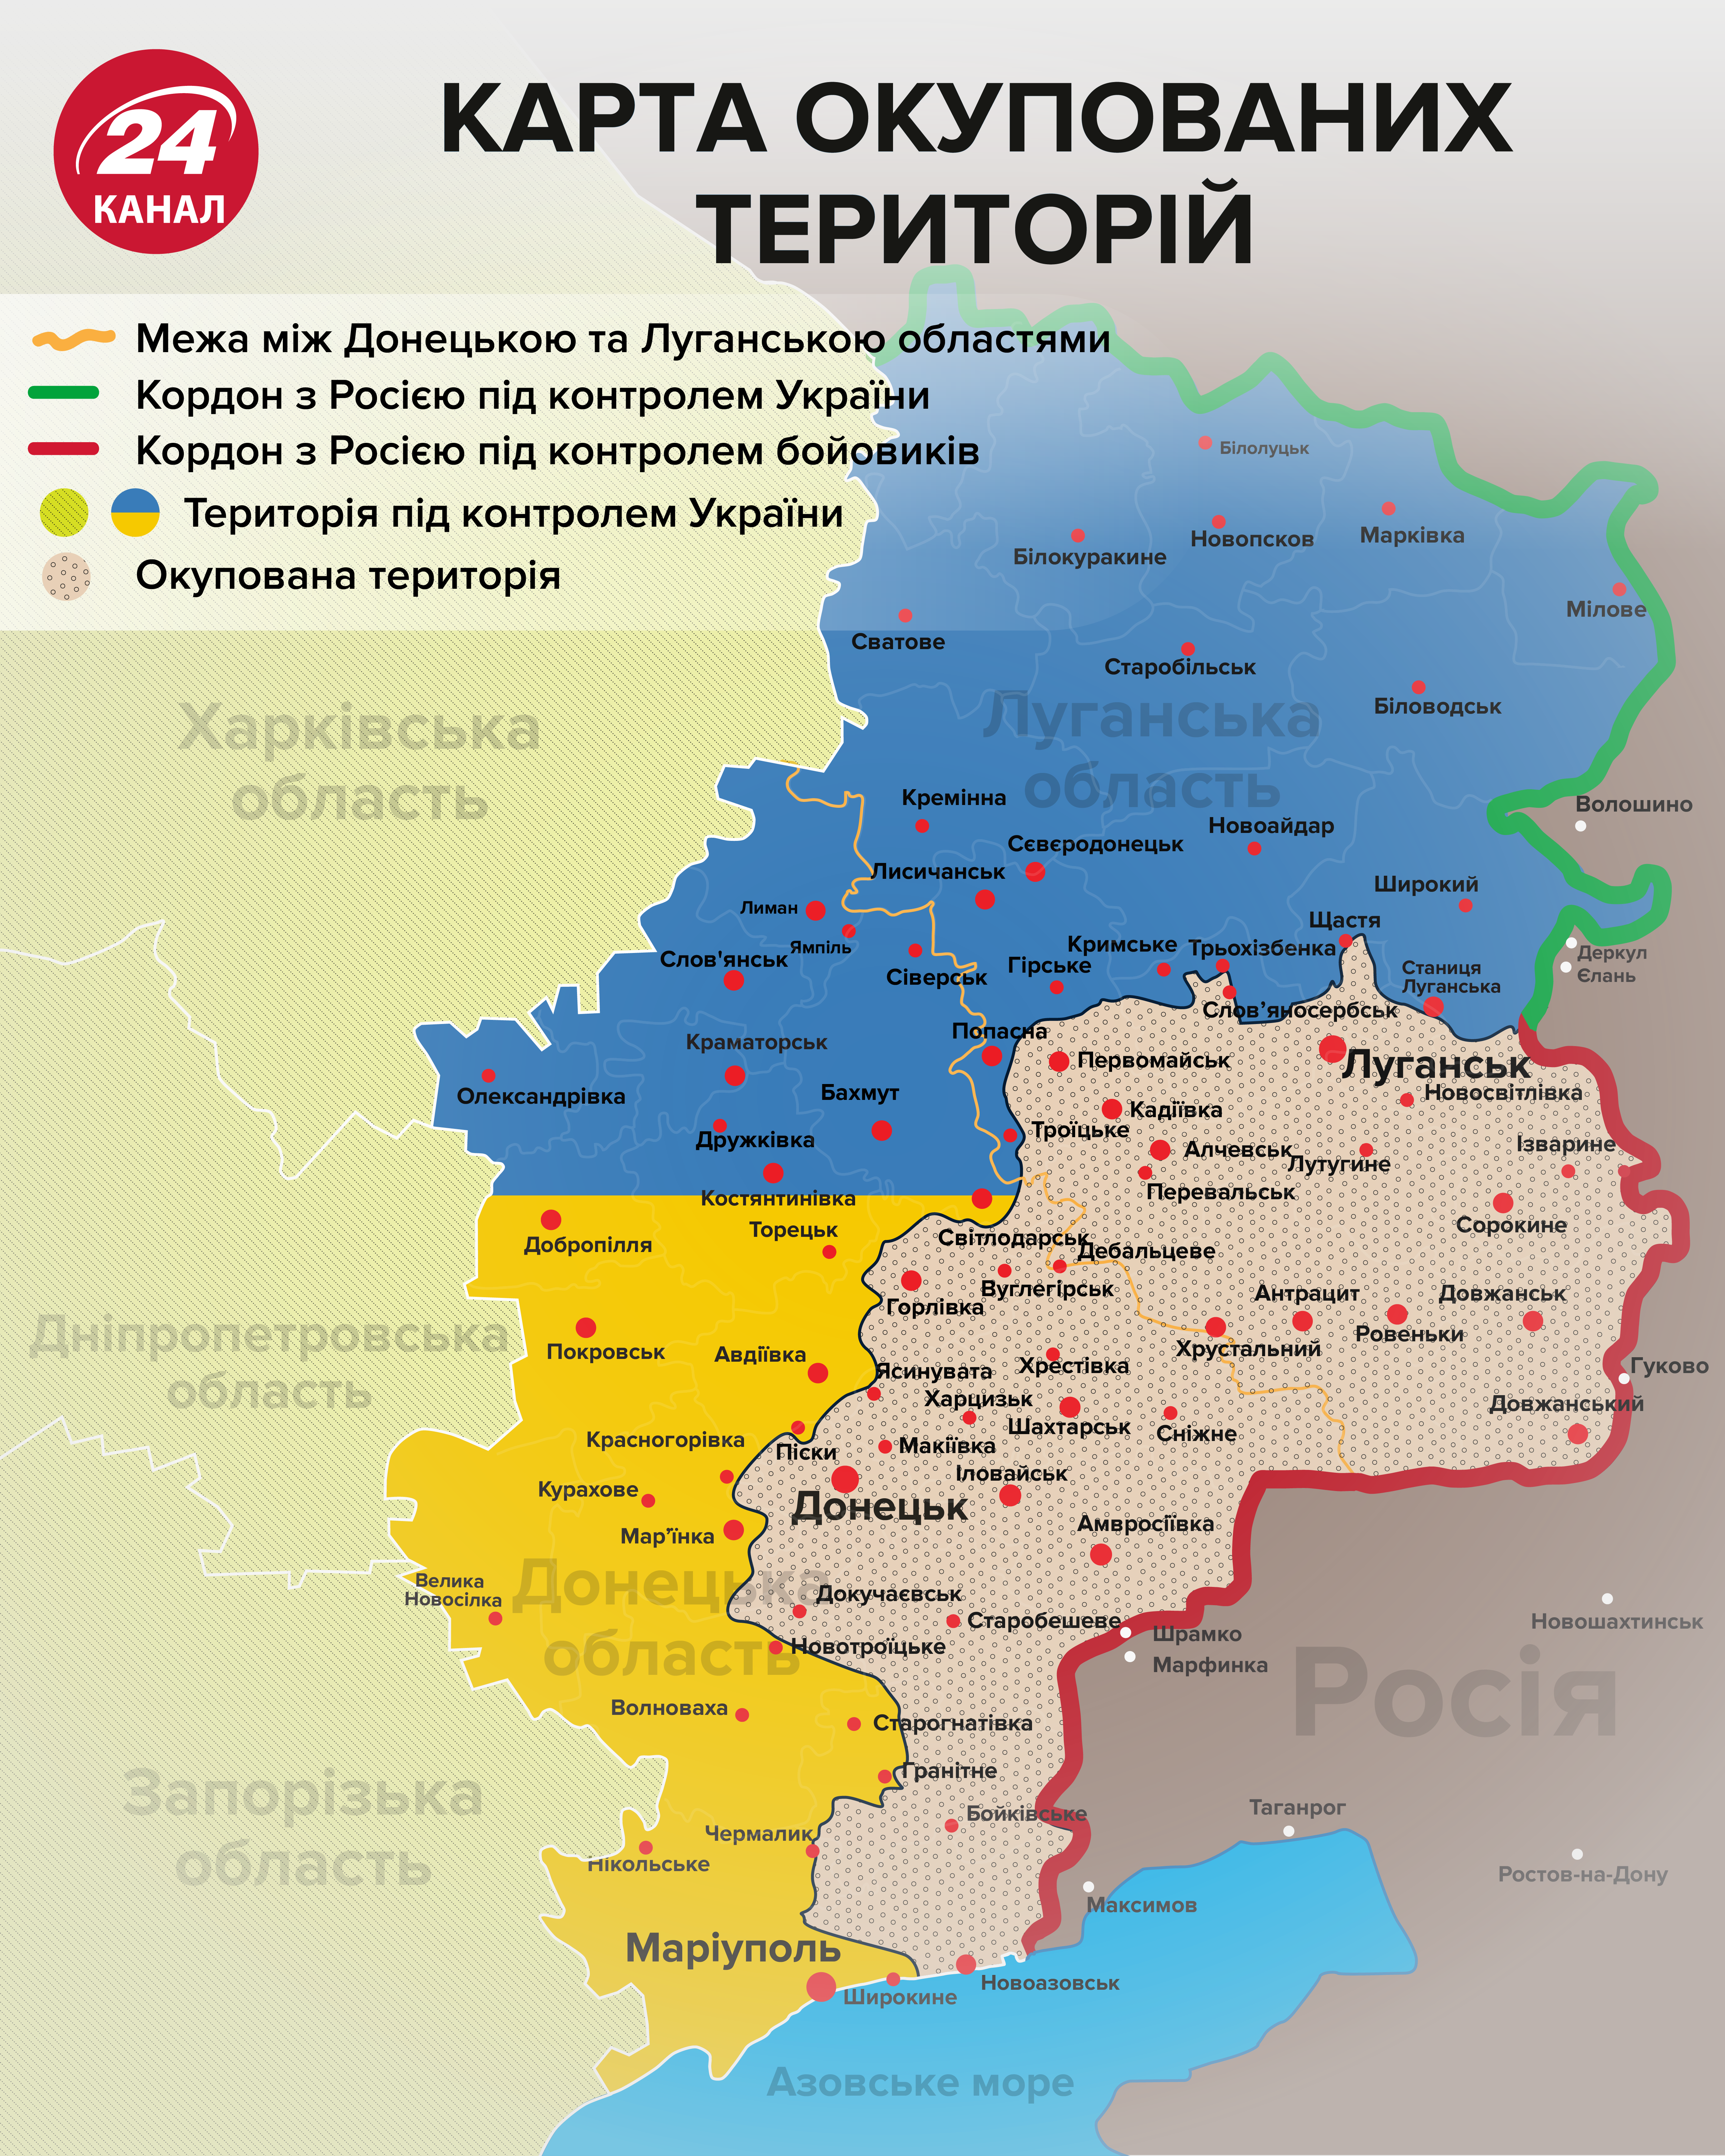 Донецкие боевики определились, на какую часть территории Украины посягают -Новости Донецка - 24 Канал